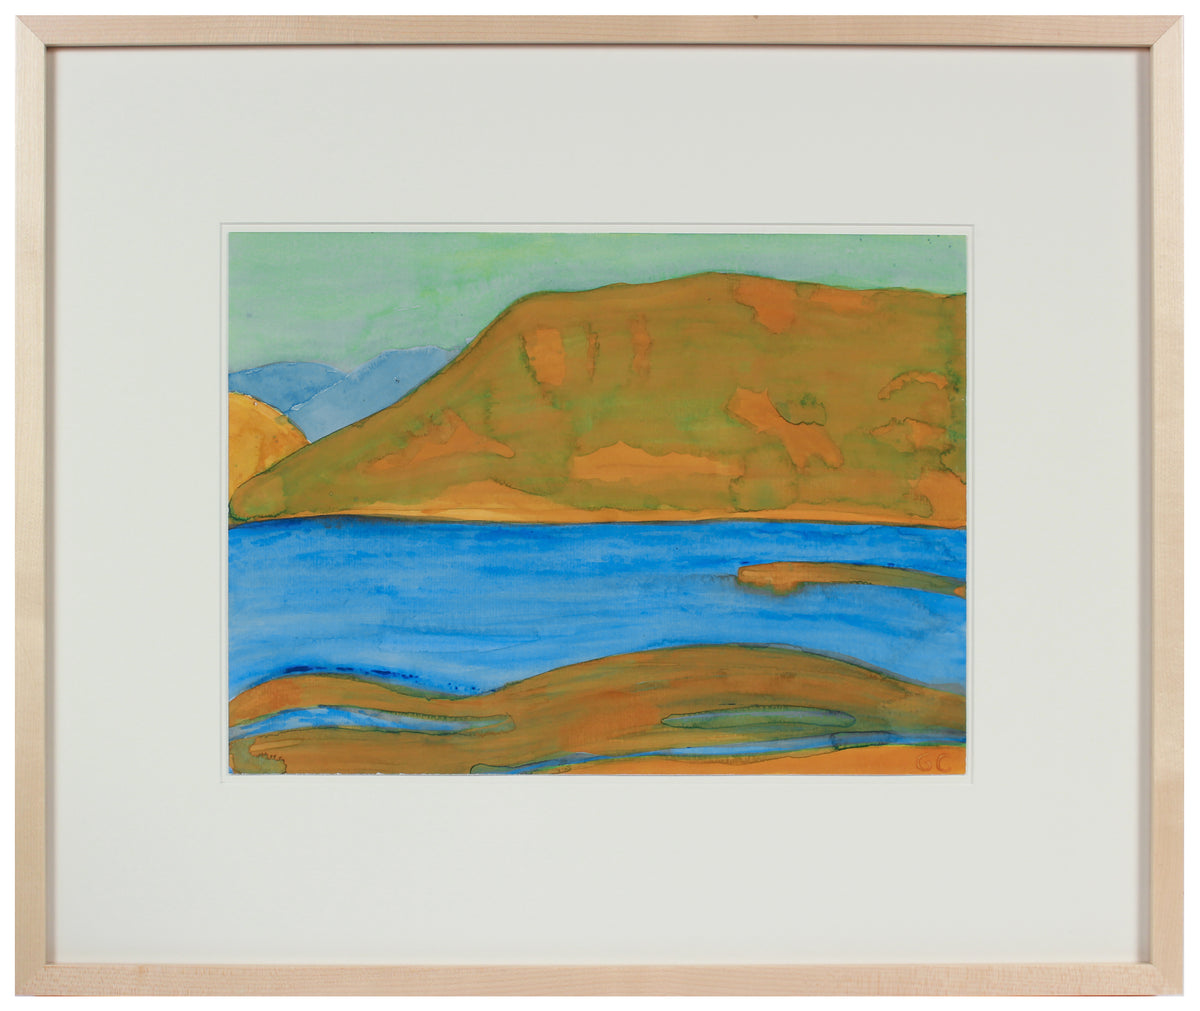 &lt;i&gt;Mendocino Lake I&lt;/i&gt; &lt;br&gt;2016 Watercolor &amp; Gouache &lt;br&gt;&lt;br&gt;#89645